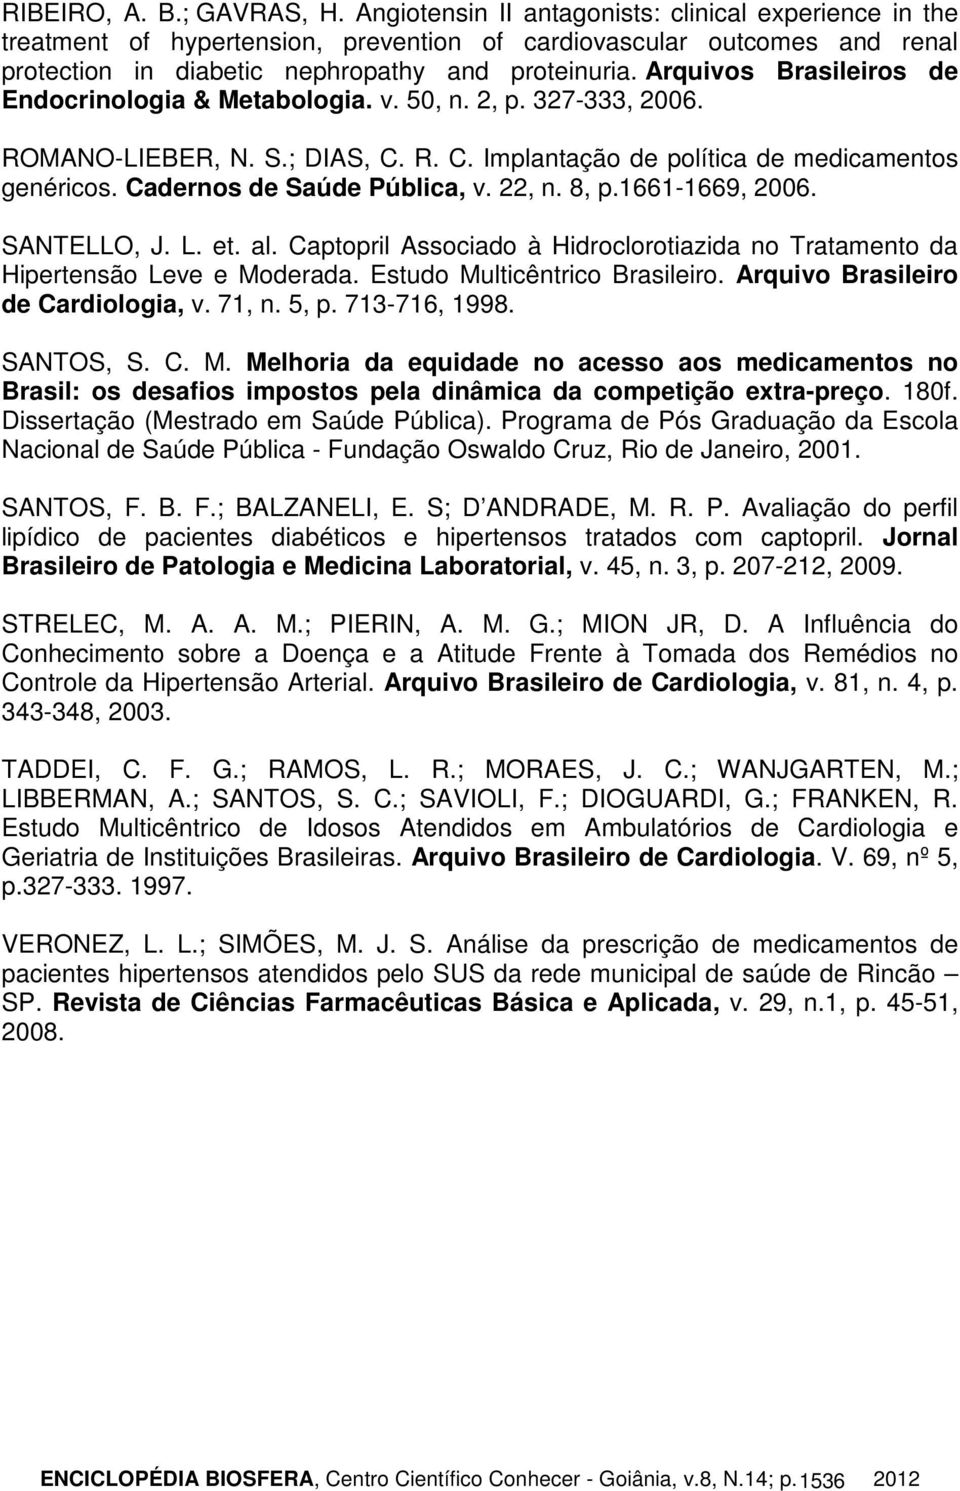 Arquivos Brasileiros de Endocrinologia & Metabologia. v. 50, n. 2, p. 327-333, 2006. ROMANO-LIEBER, N. S.; DIAS, C. R. C. Implantação de política de medicamentos genéricos.